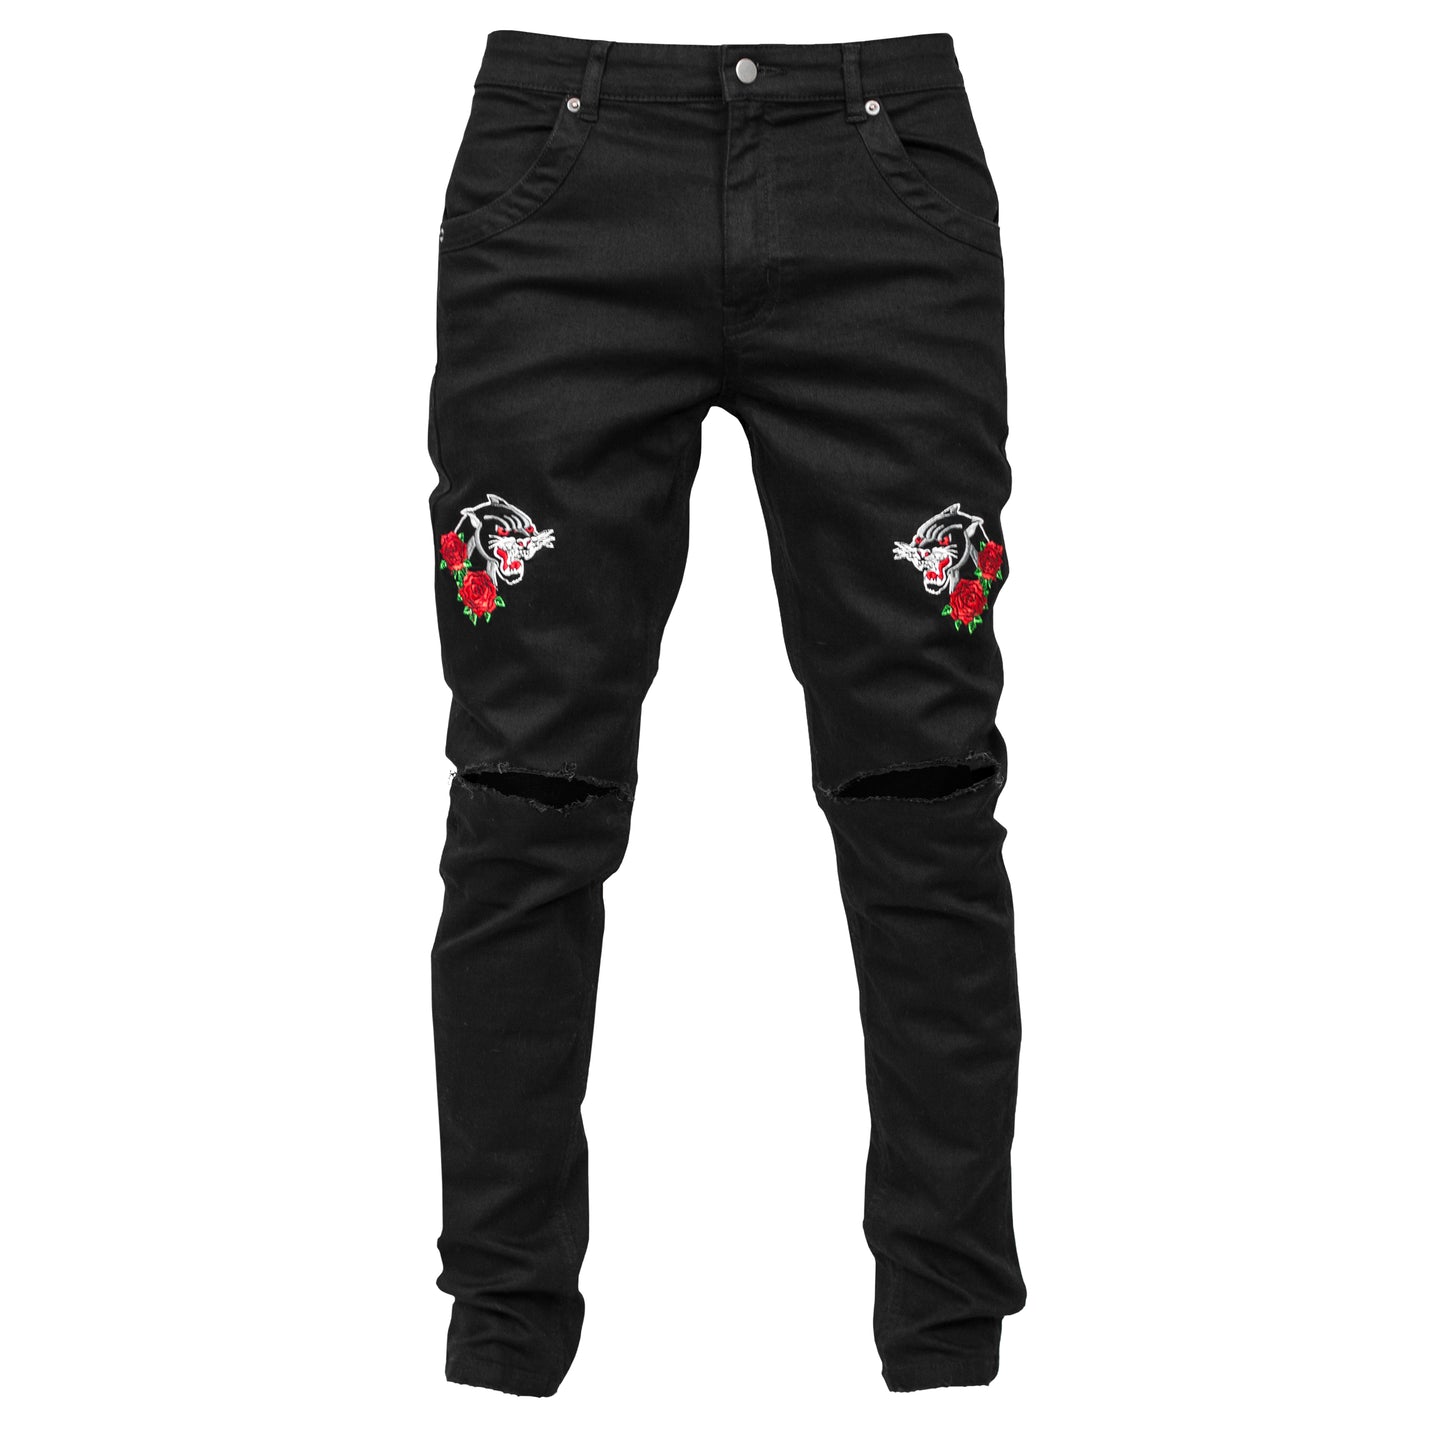 Panther Knee Slit Jeans : Black